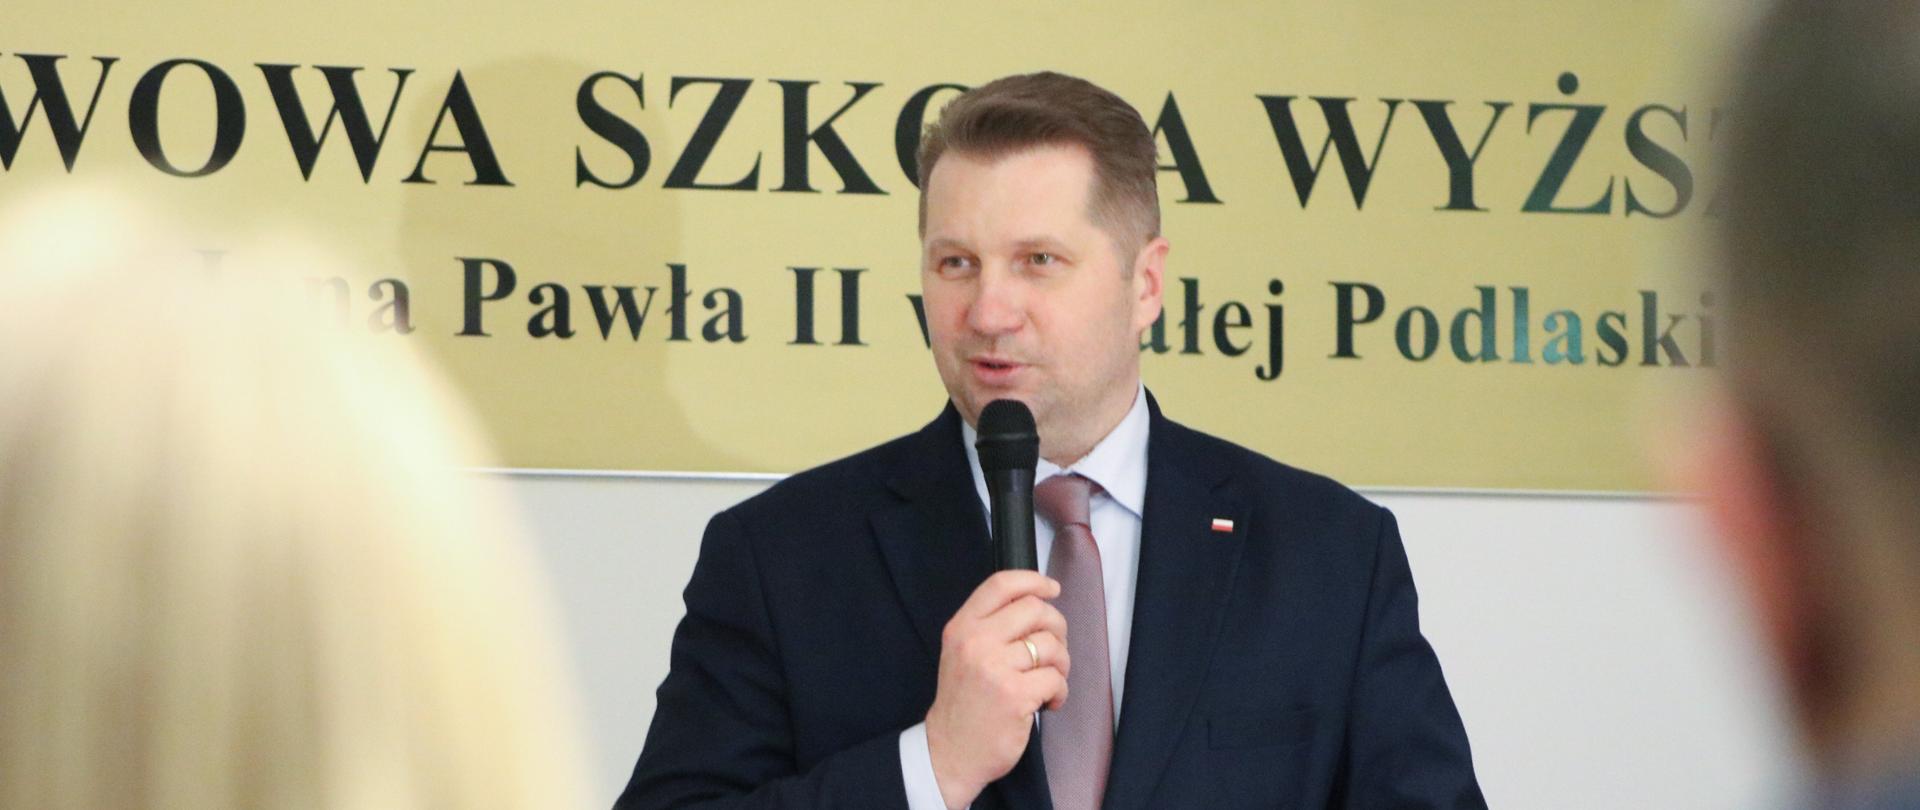 Minister Przemysław Czarnek przemawia podczas wystąpienia w wyższej szkole do mikrofonu. w tle nazwa uczelni. 